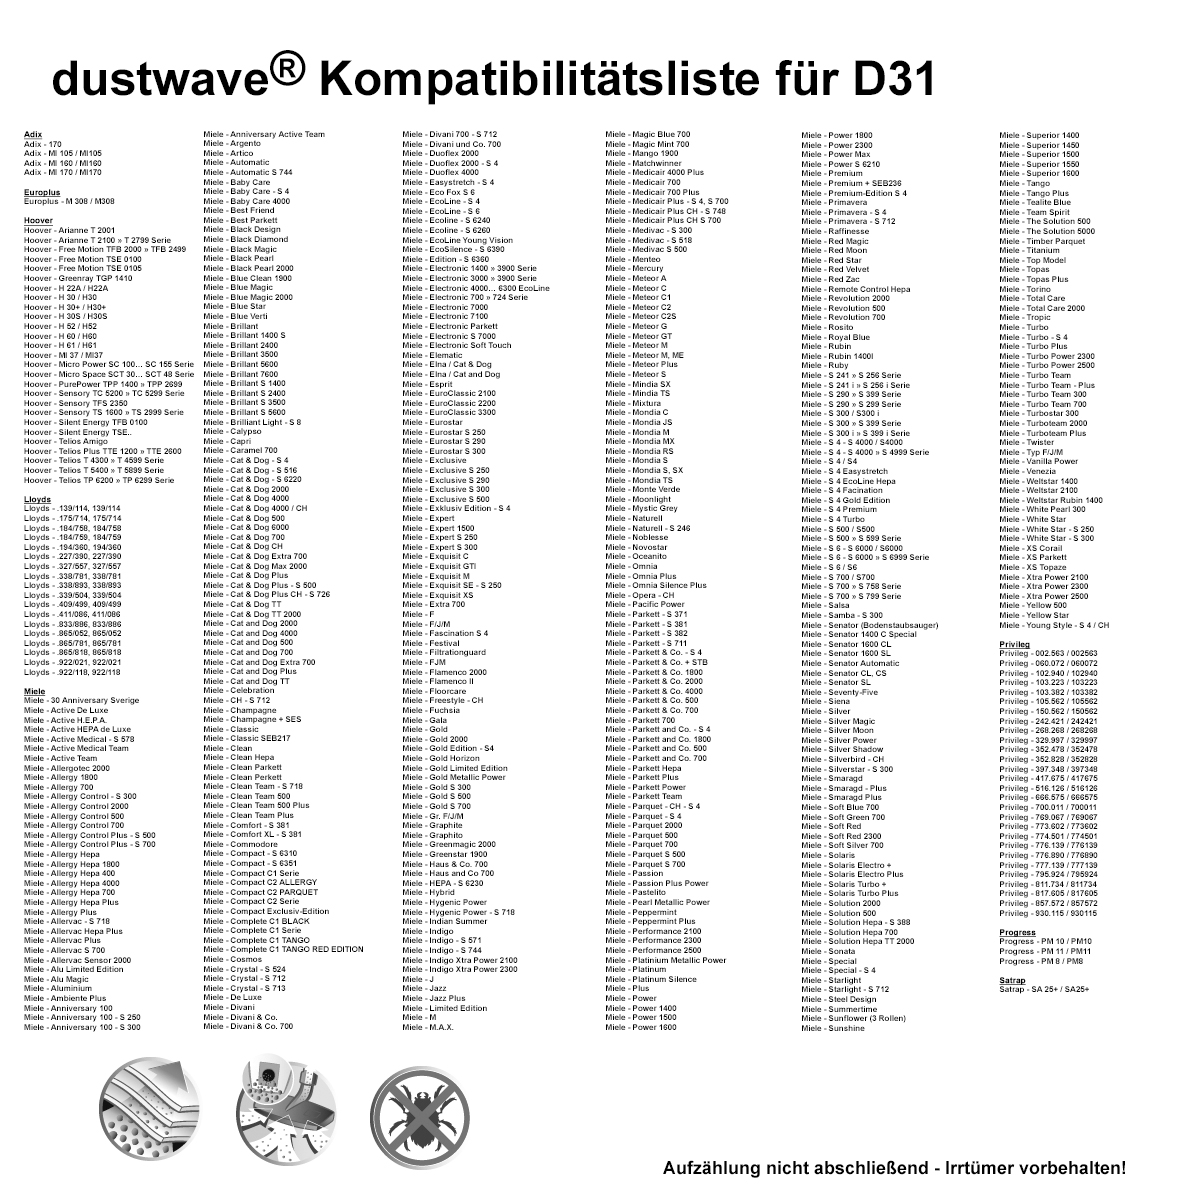 Dustwave® 5 Staubsaugerbeutel für Miele S6250 / S 6250 S6 - hocheffizient, mehrlagiges Mikrovlies mit Hygieneverschluss - Made in Germany